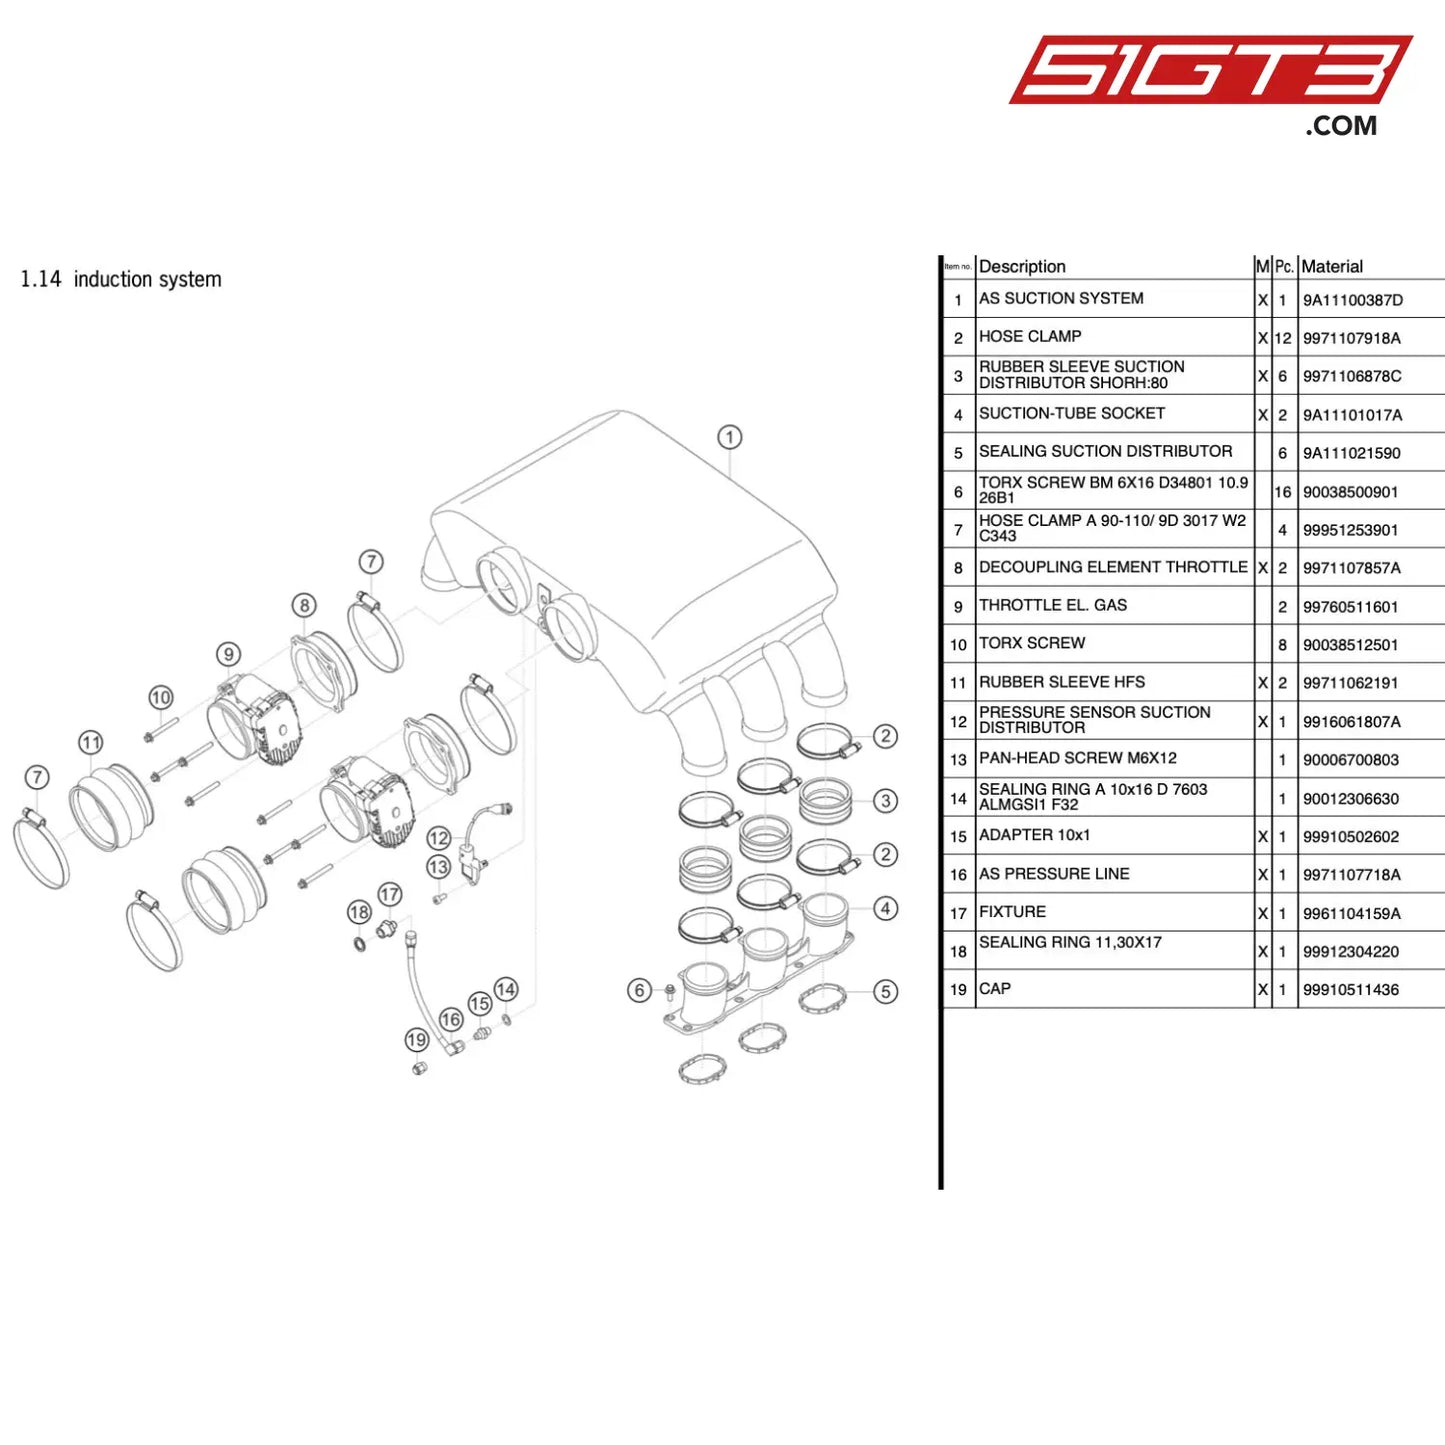 Fixture - 9961104159A [Porsche 911 Gt3 R Type 991 (Gen 1)] Induction System